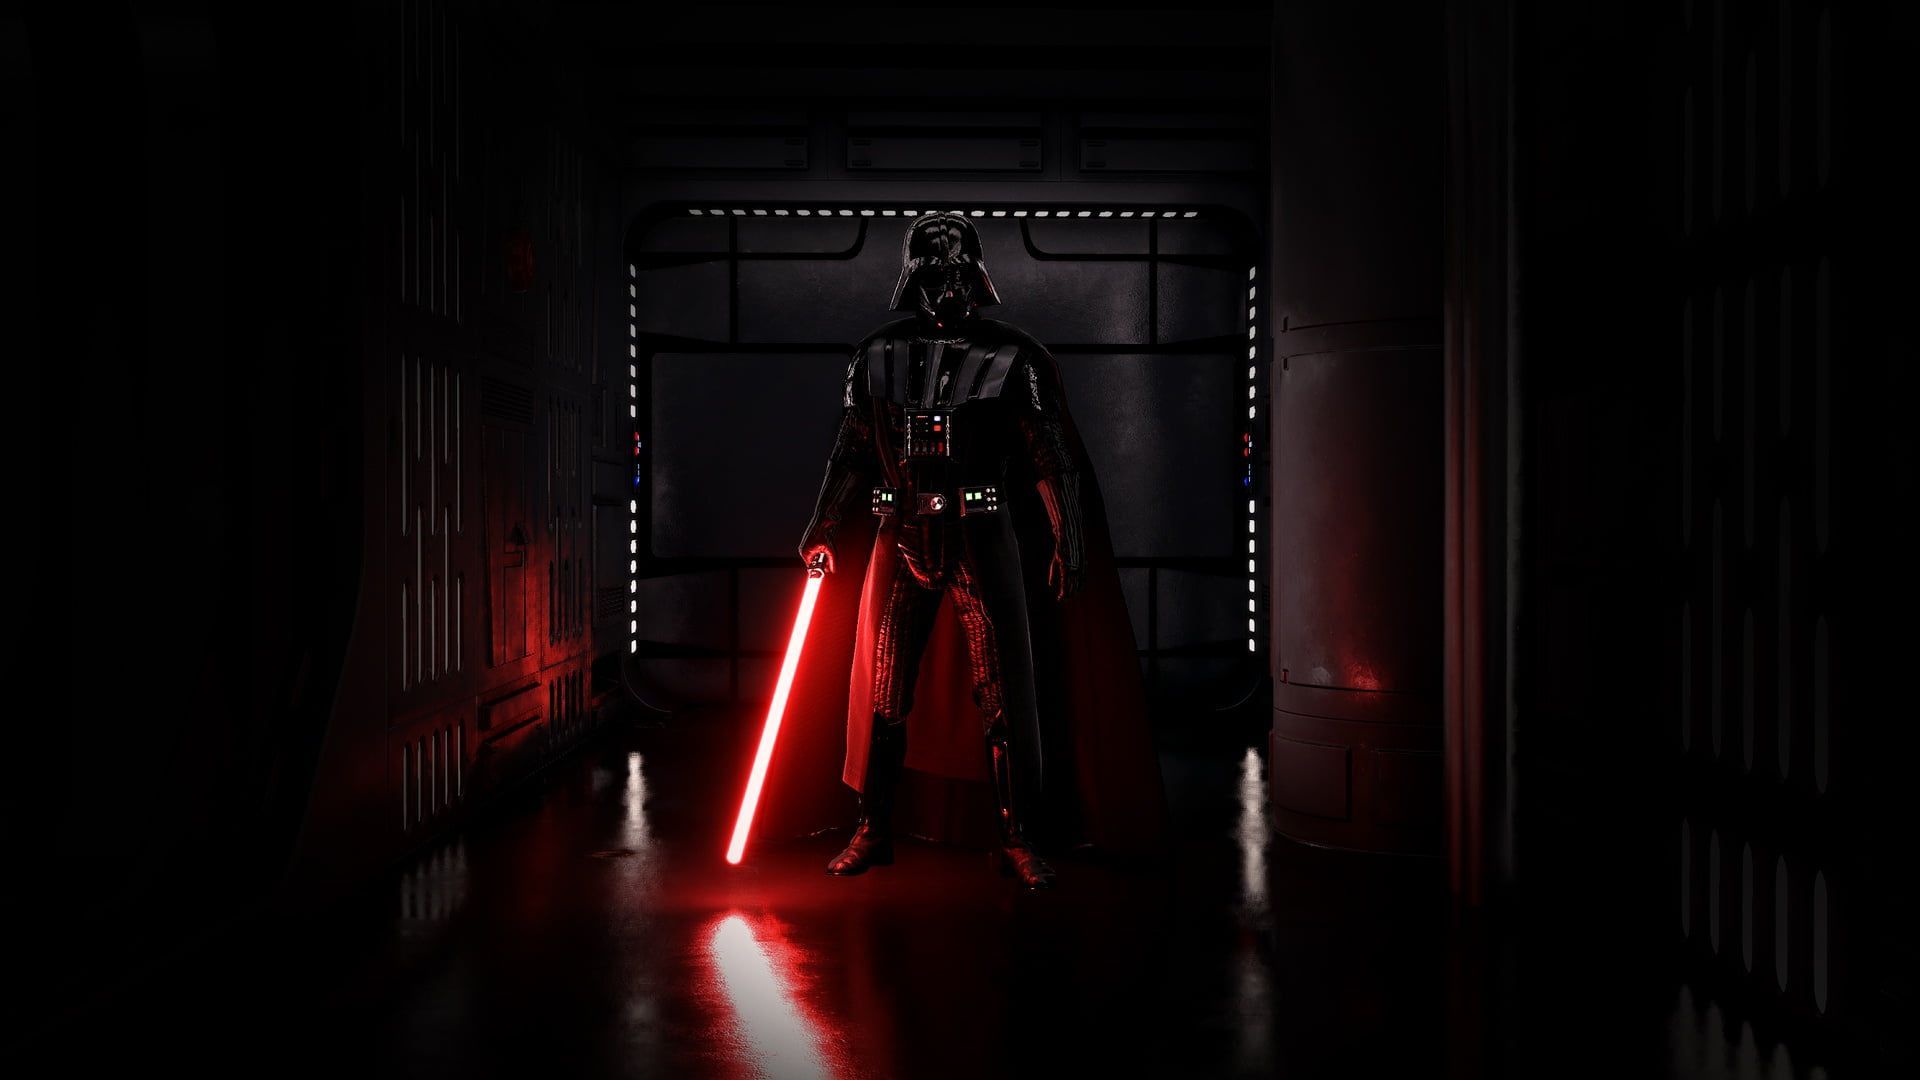 Star Wars Darth Vader digital wallpaper Darth Vader #Sith Star Wars #dark # lightsaber P #wal. Darth vader wallpaper, Dark side star wars, Star wars wallpaper